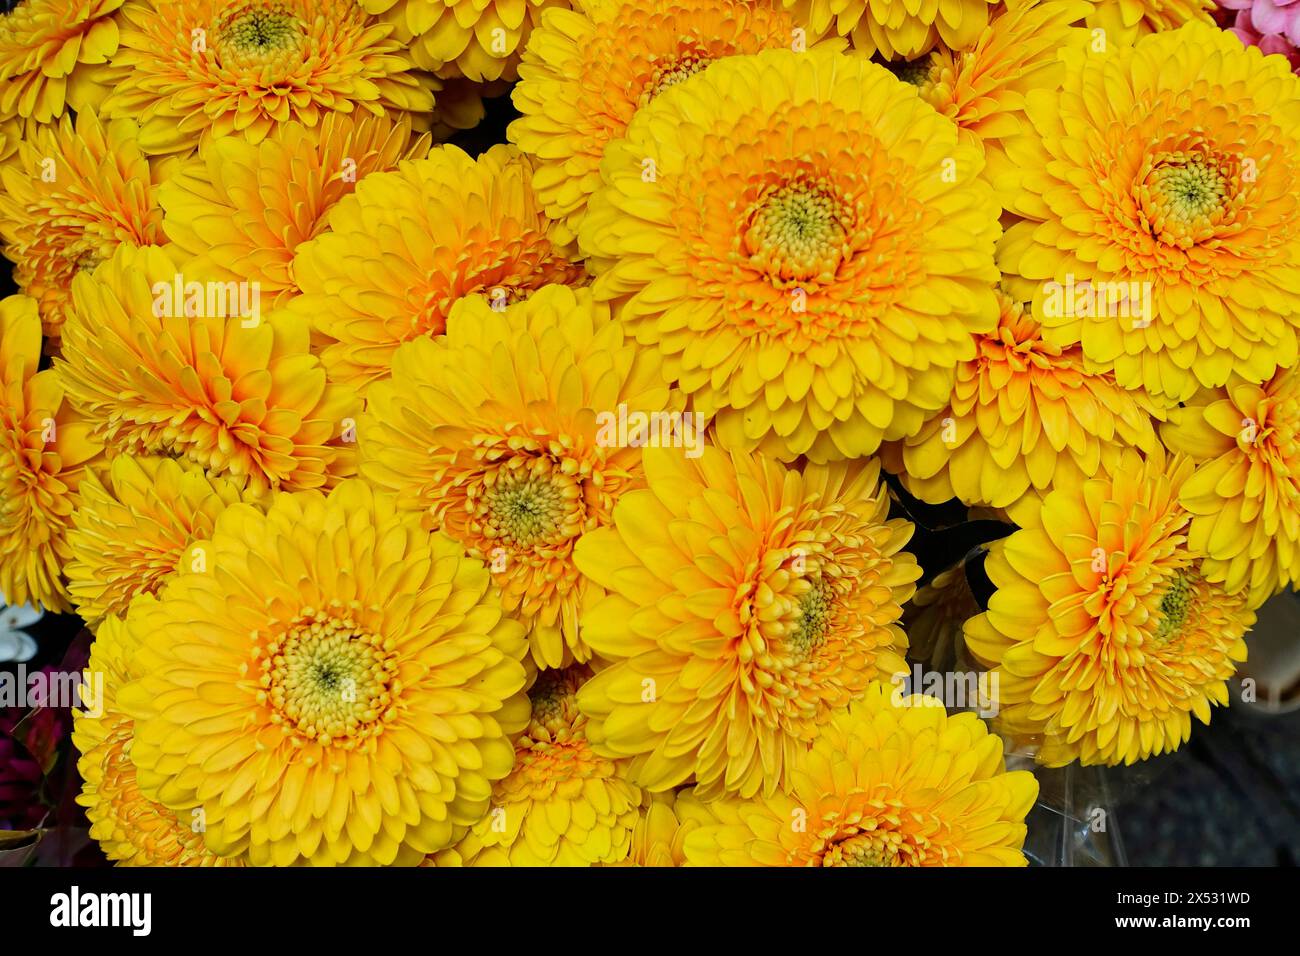 Plan macro de fleurs Gerber jaune vif Marguerite, vente de fleurs (Gerber Marguerite), gare centrale, Hambourg, ville hanséatique de Hambourg, Allemagne Banque D'Images